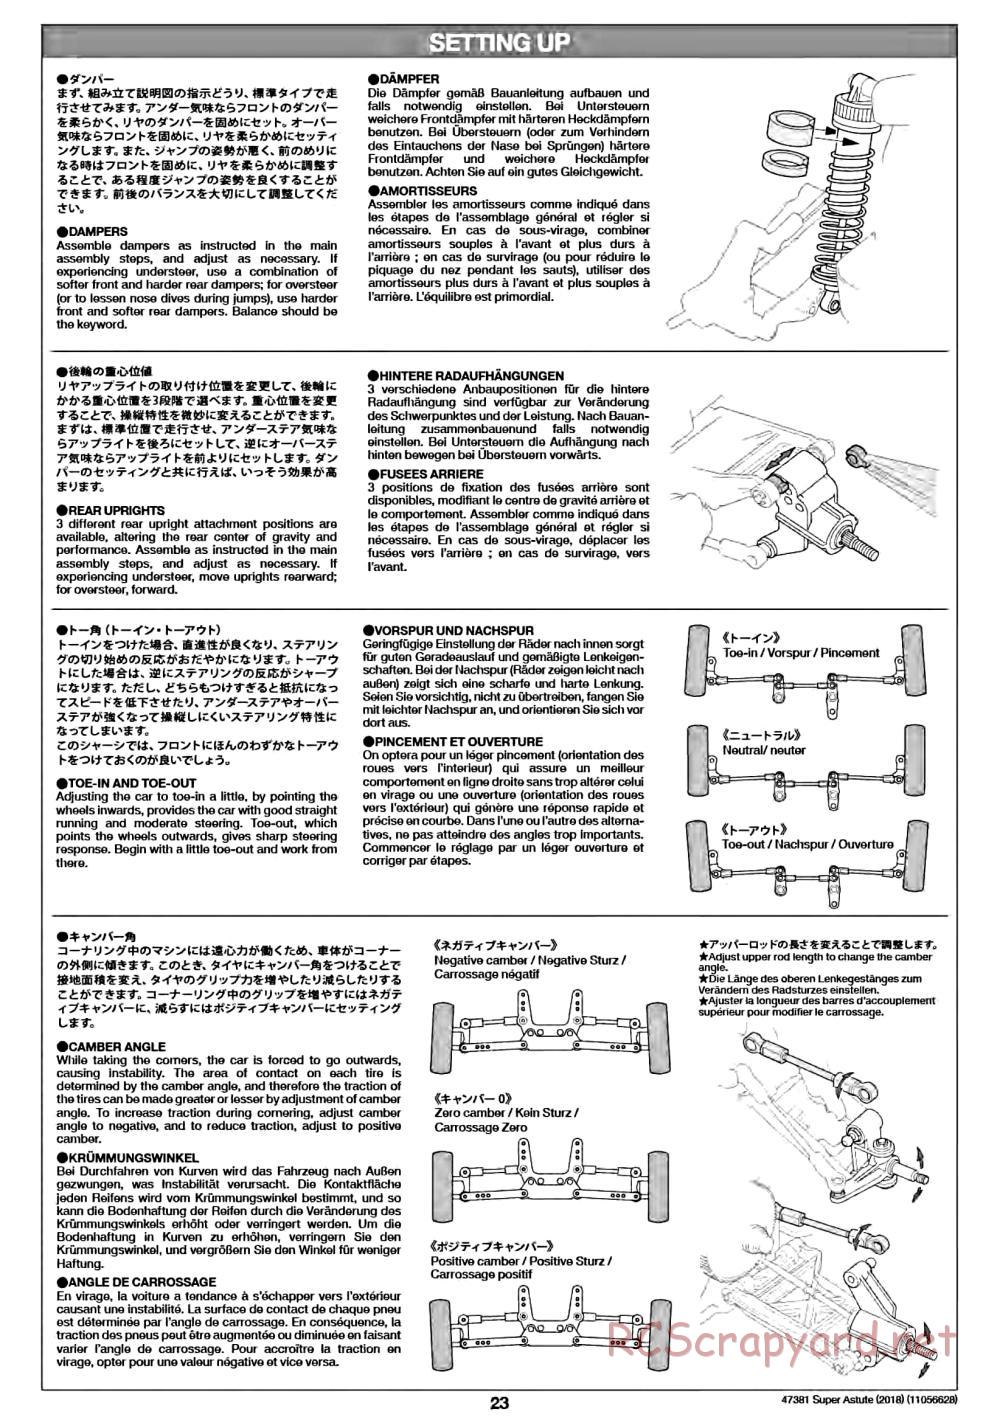 Tamiya - Super Astute (2018) Chassis - Manual - Page 23